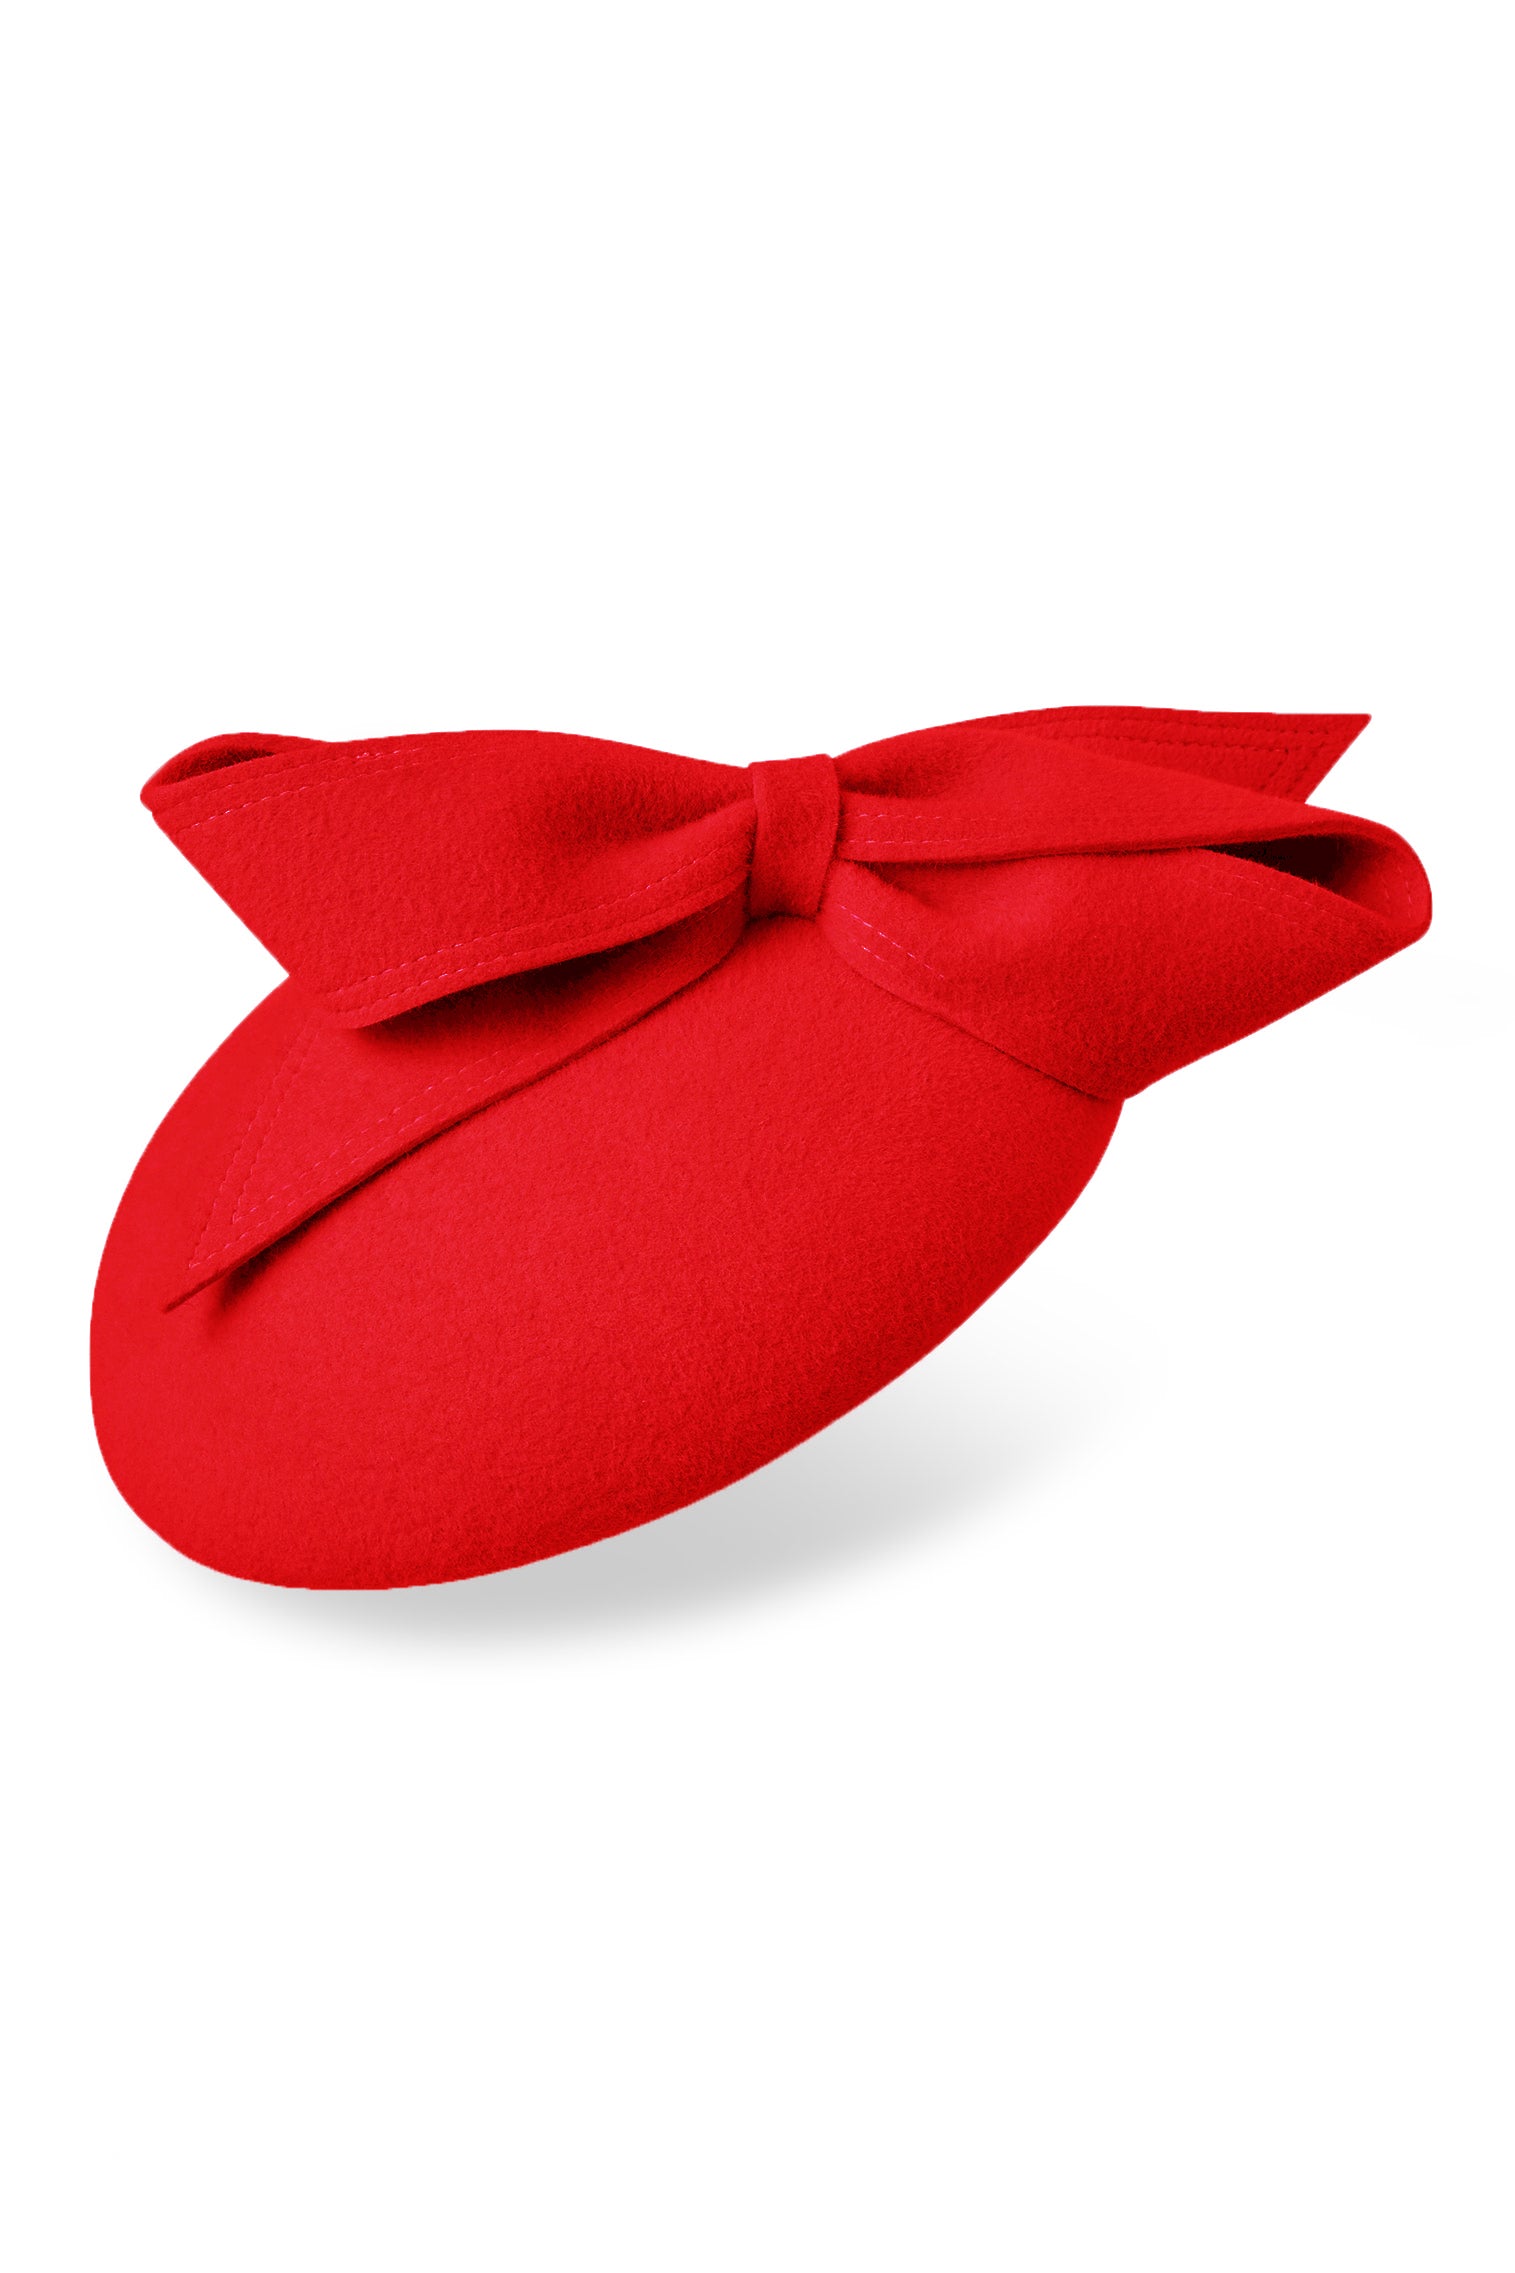 Lana Red Button Hat - Women’s Hats - Lock & Co. Hatters London UK